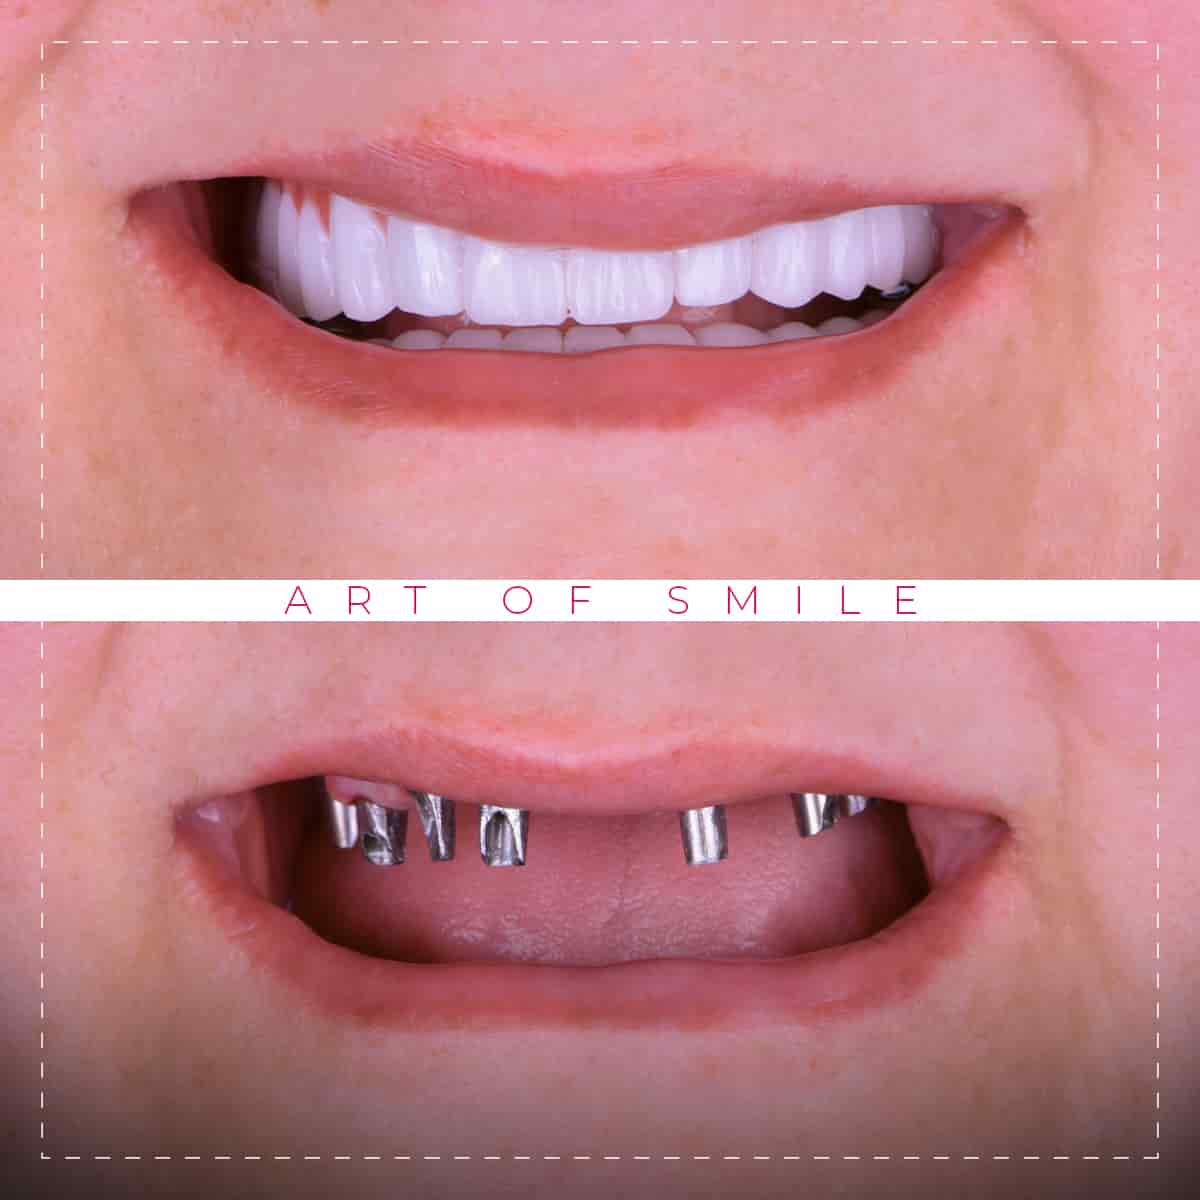 Ästhetische Zahnheilkunde vorher und nachher, Zahnreinigung, Hollywood-Lächeln, Zahnimplantate